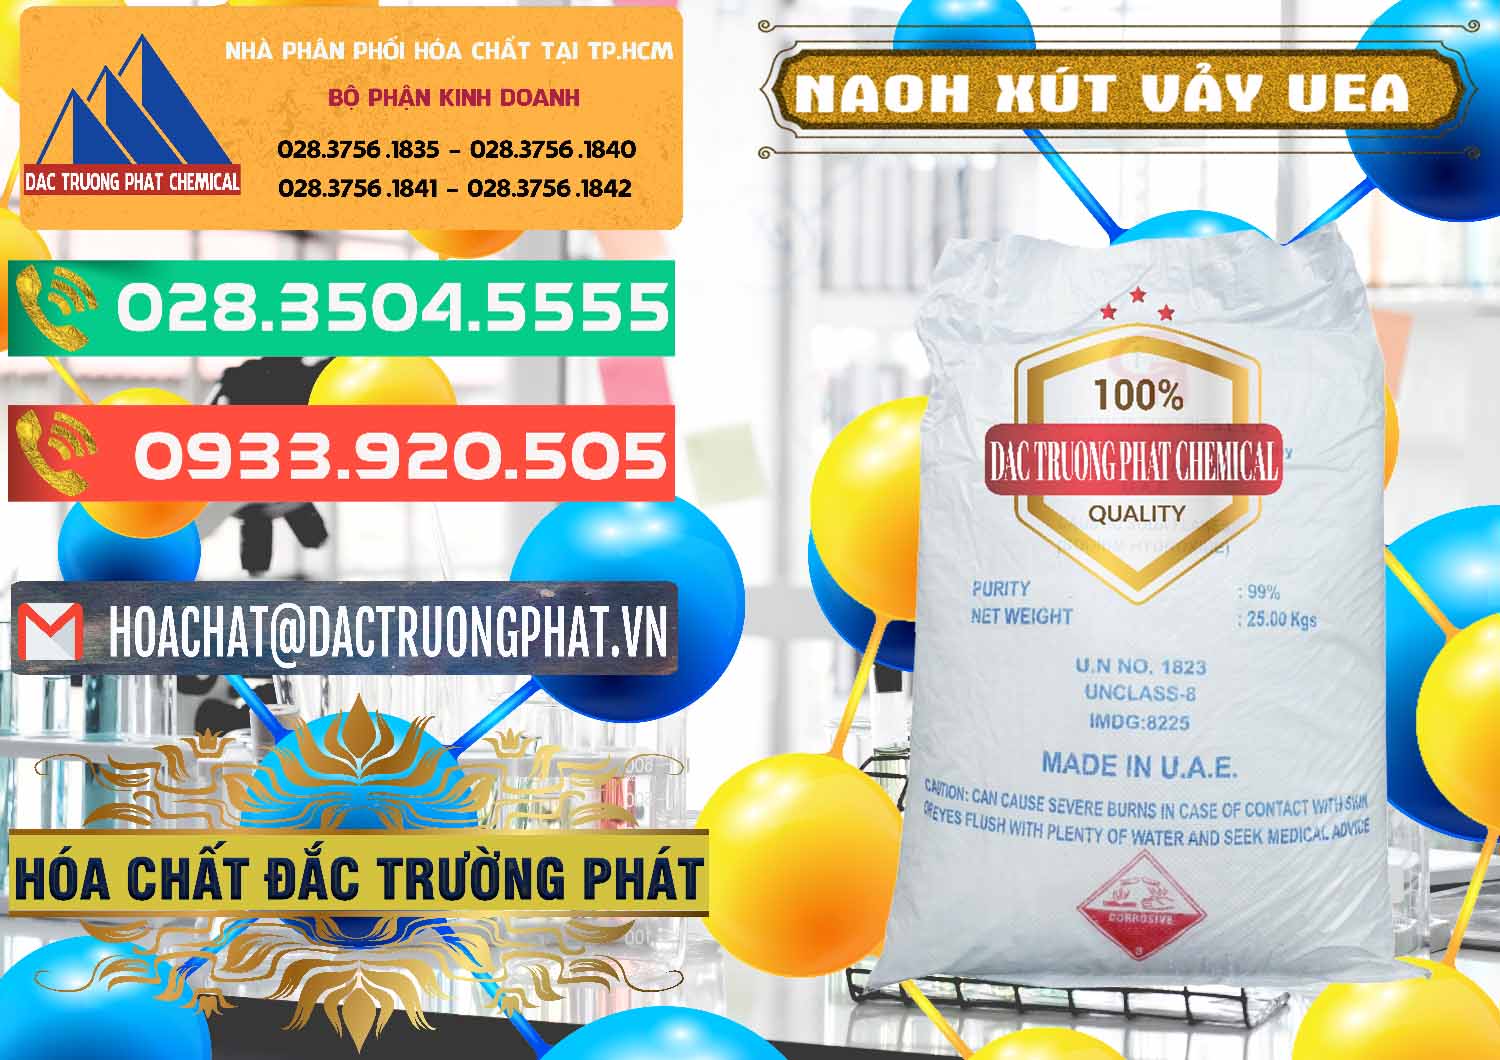 Chuyên cung cấp - bán Xút Vảy - NaOH Vảy UAE Iran - 0432 - Nhà phân phối - nhập khẩu hóa chất tại TP.HCM - congtyhoachat.com.vn